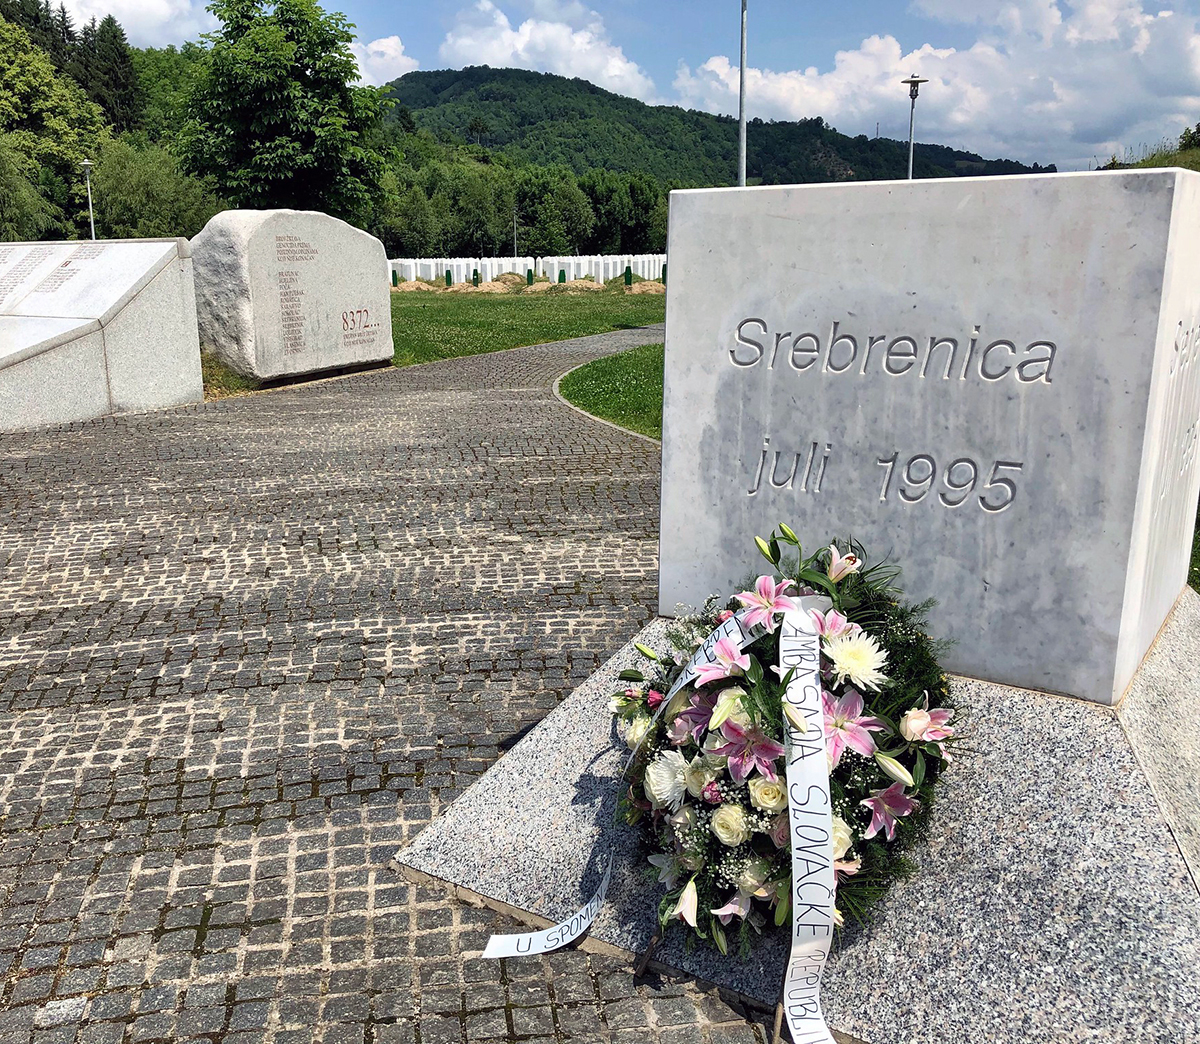 Memorial to the Srebrenica massacre.